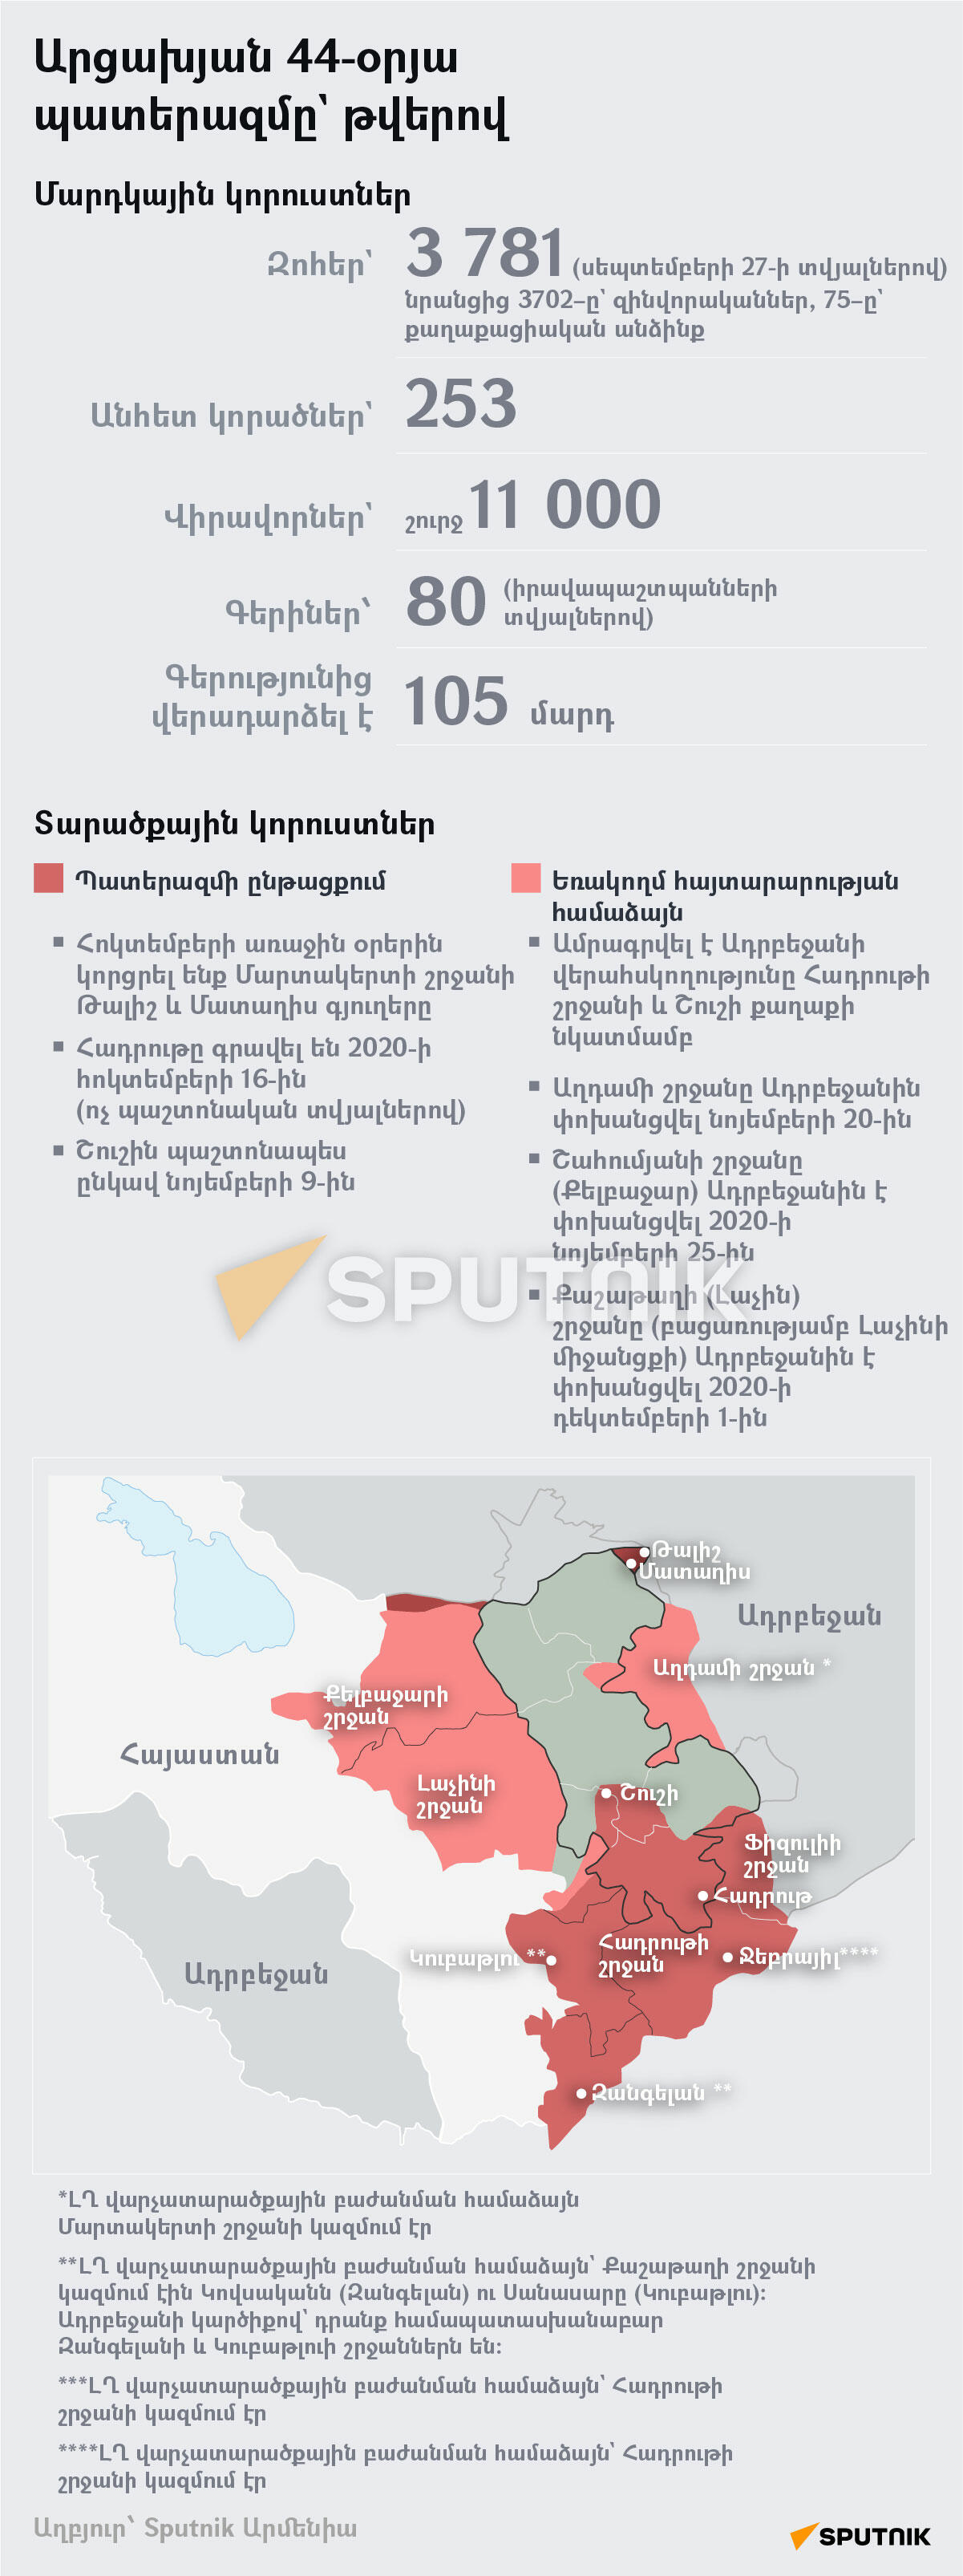 Արցախյան 44-օրյա պատերազմը` թվերով - Sputnik Արմենիա